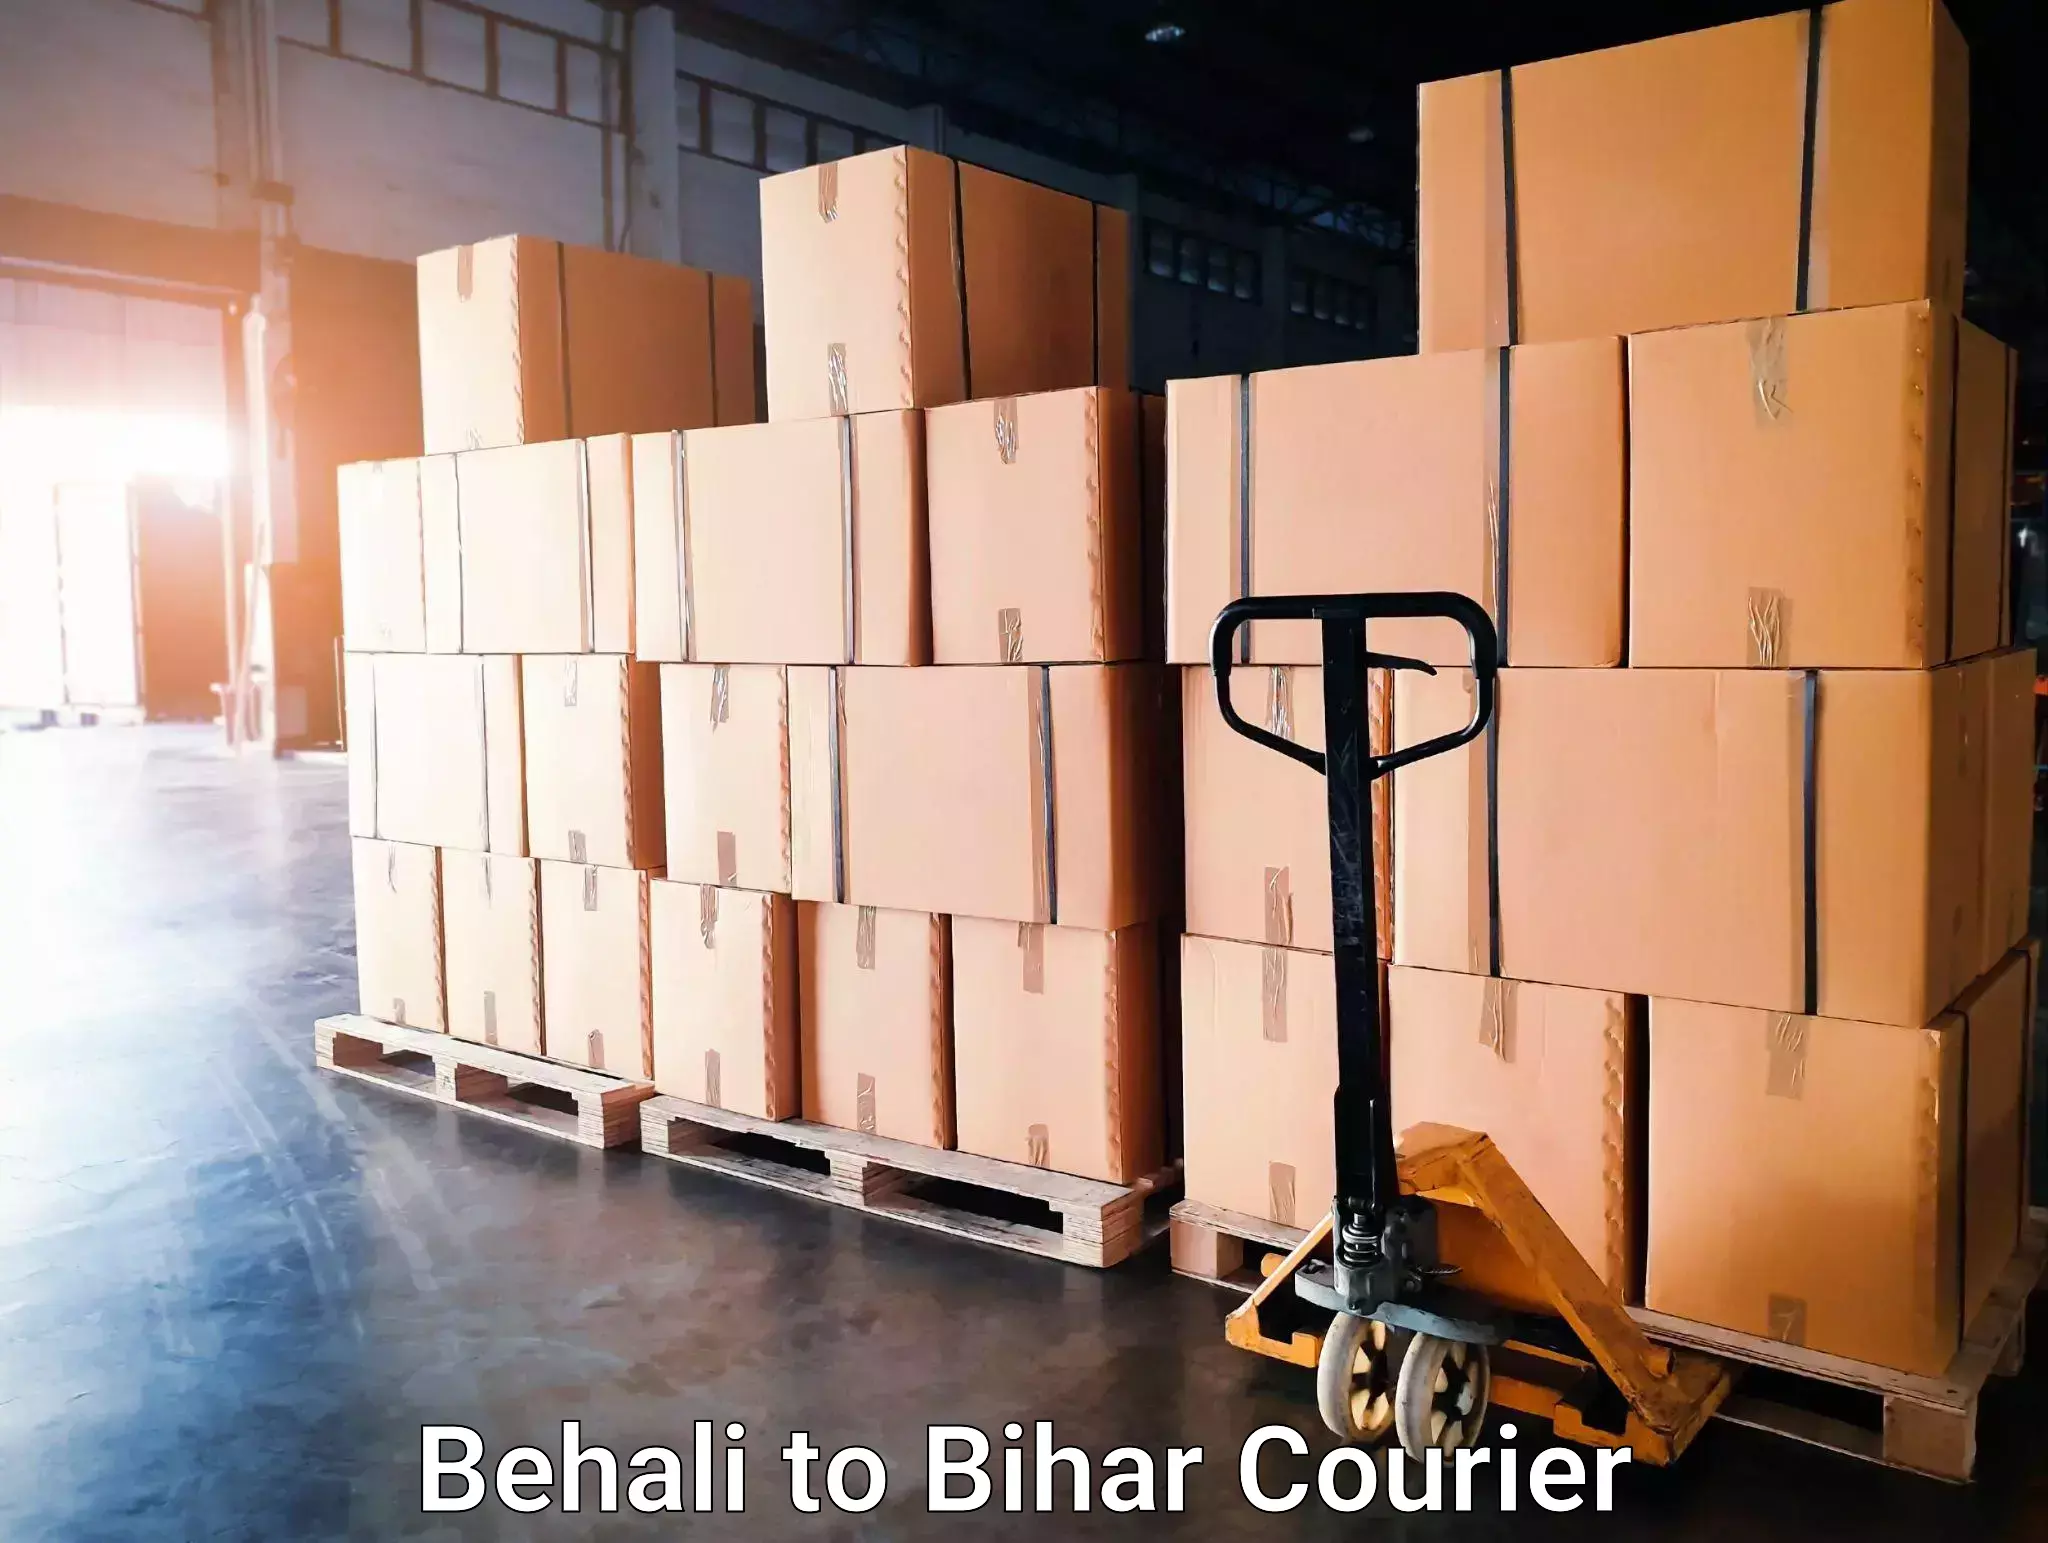 High-speed parcel service Behali to Bihar